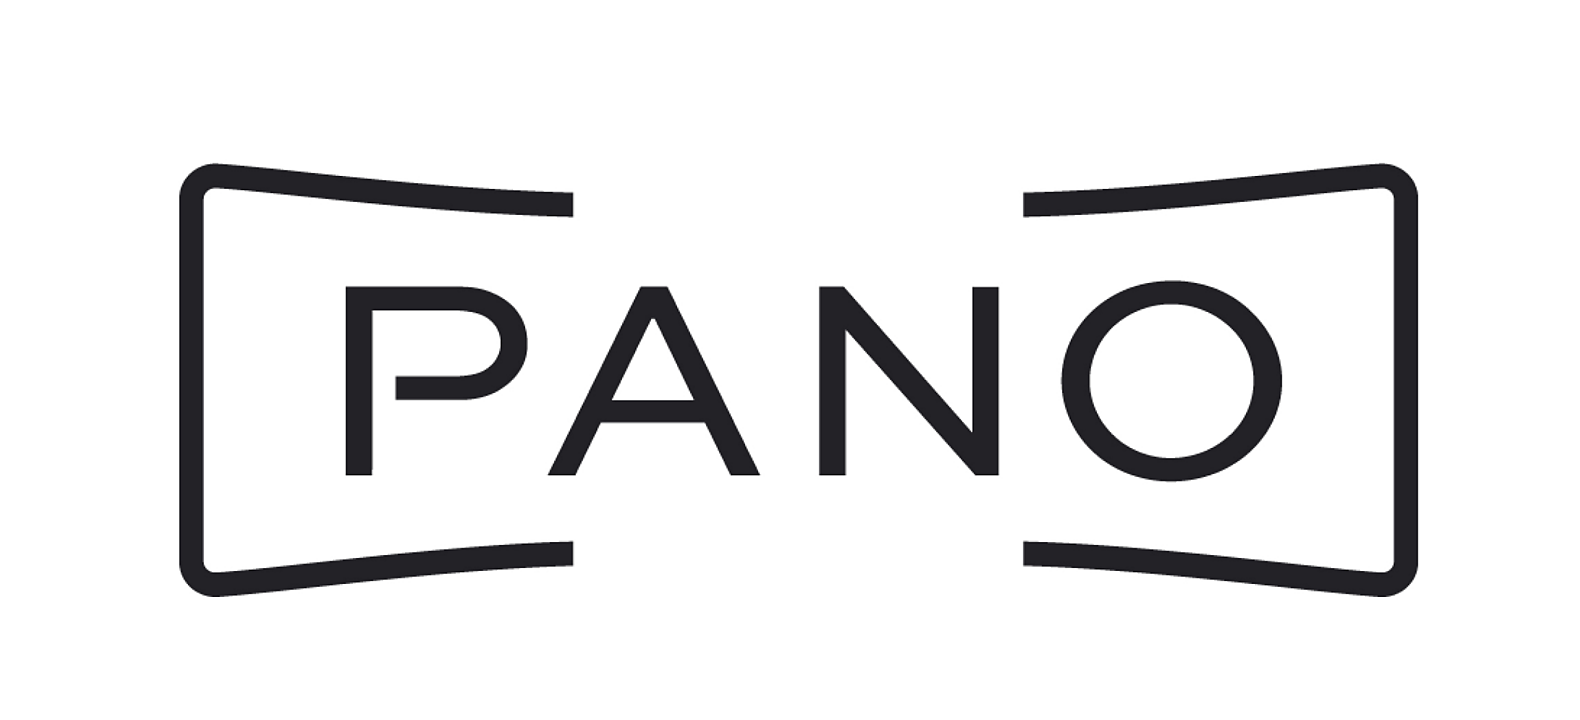 Pano (panorámica)